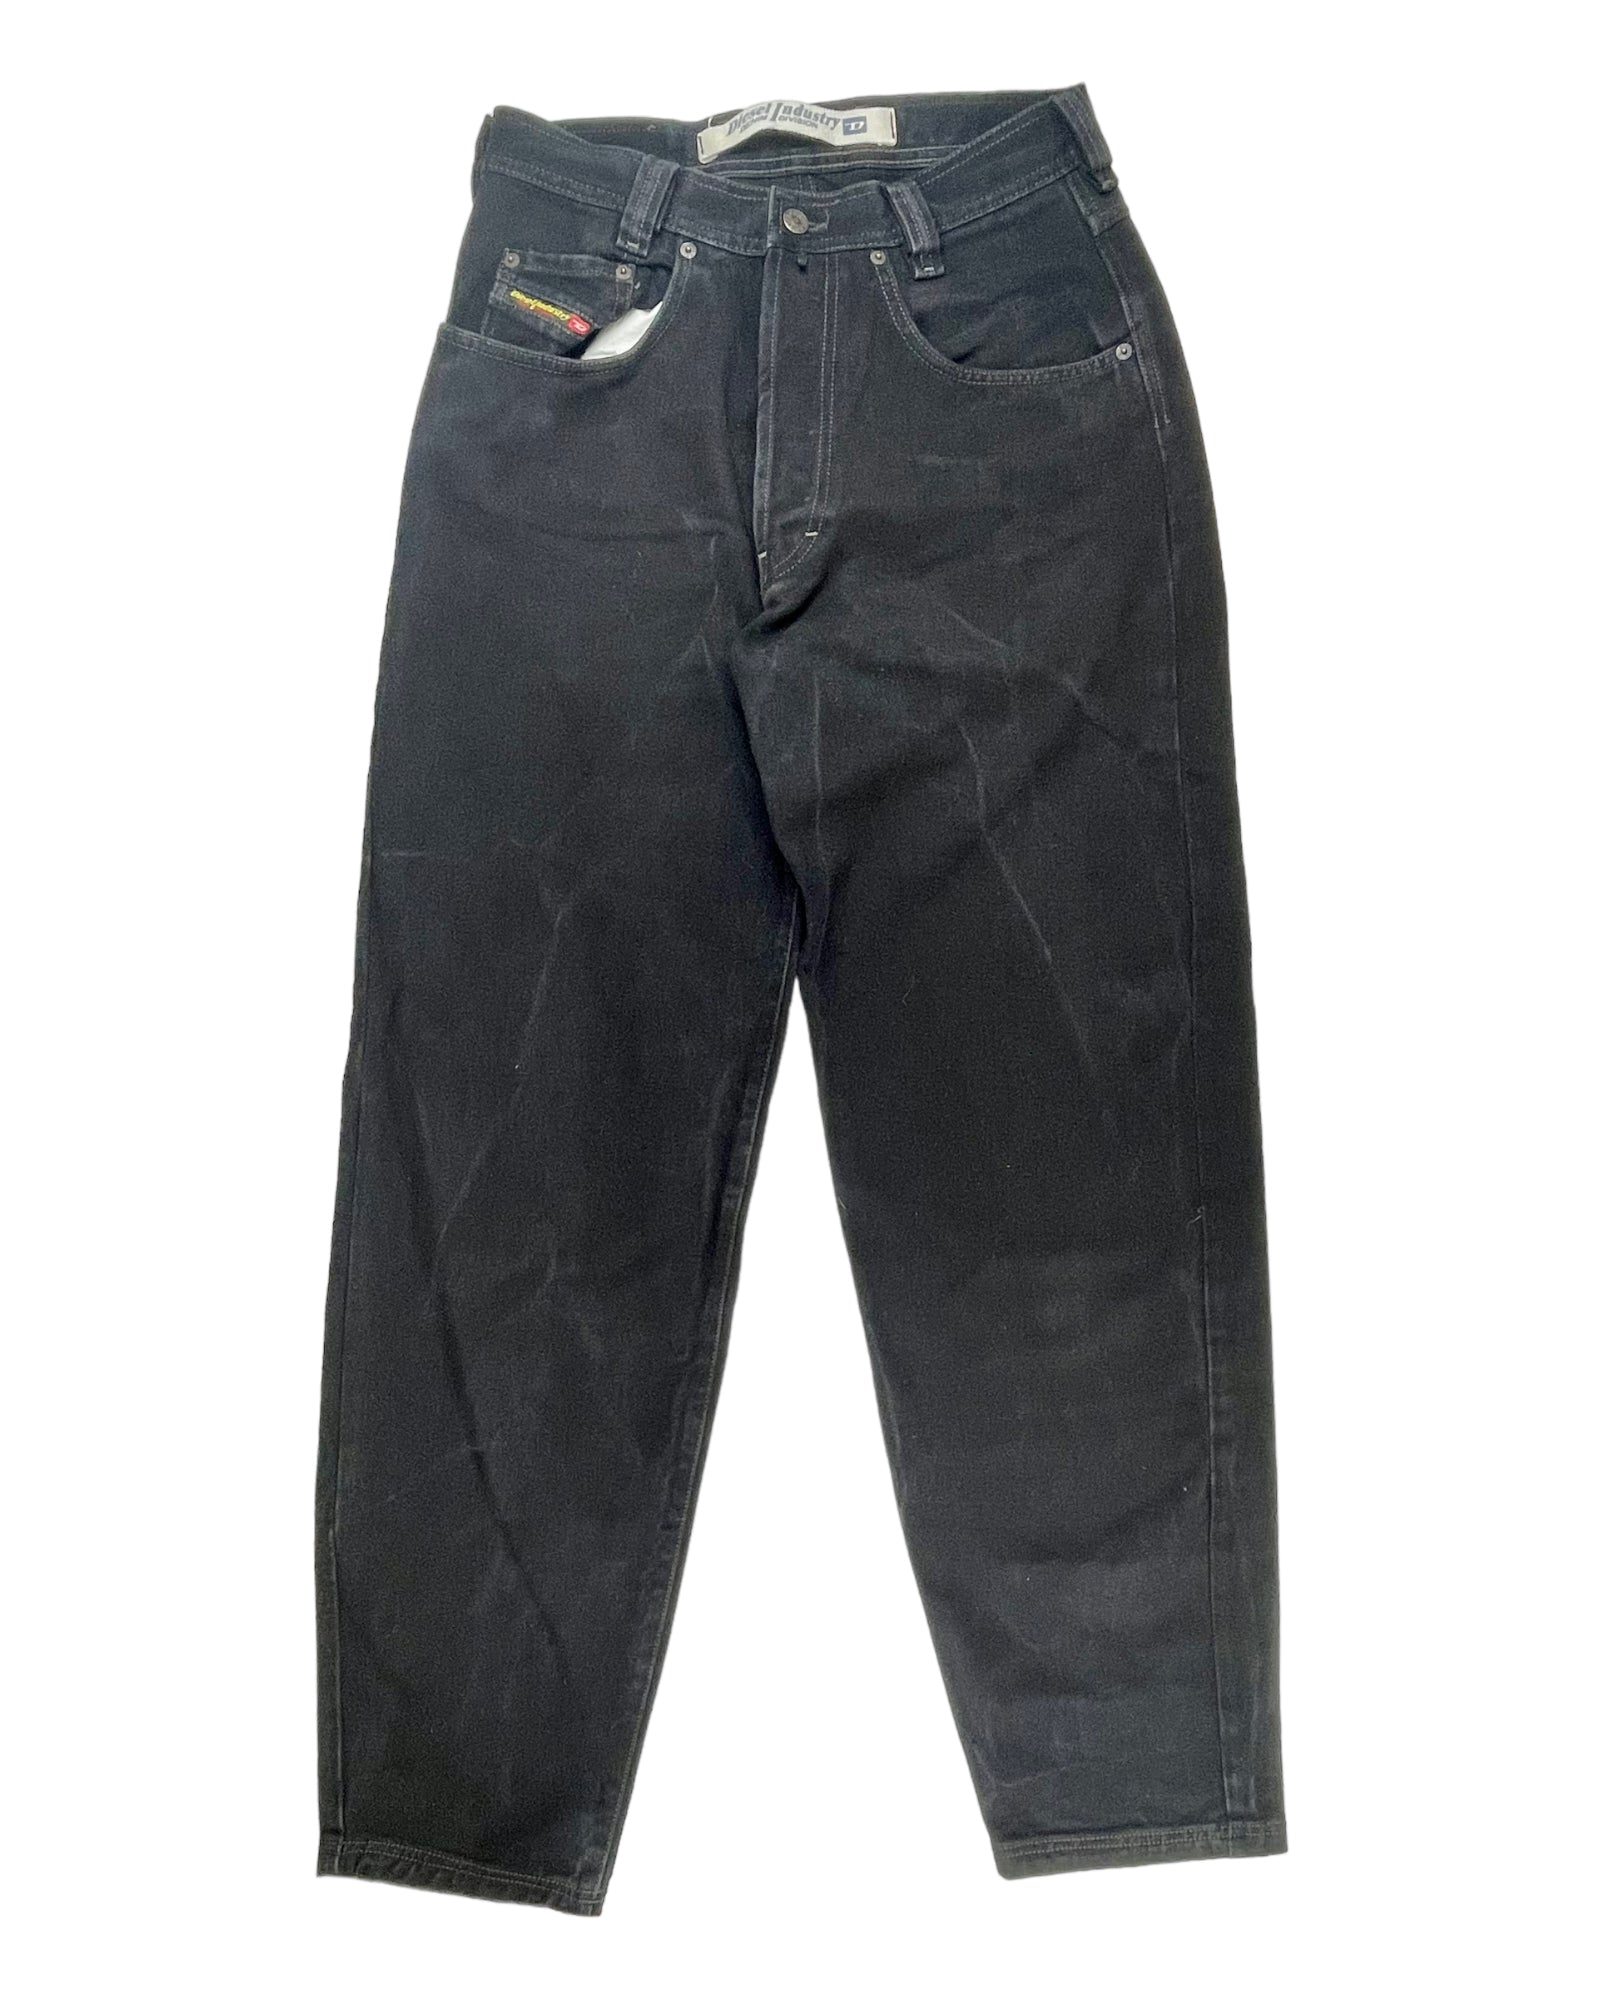 Vintage Black Diesel Jeans